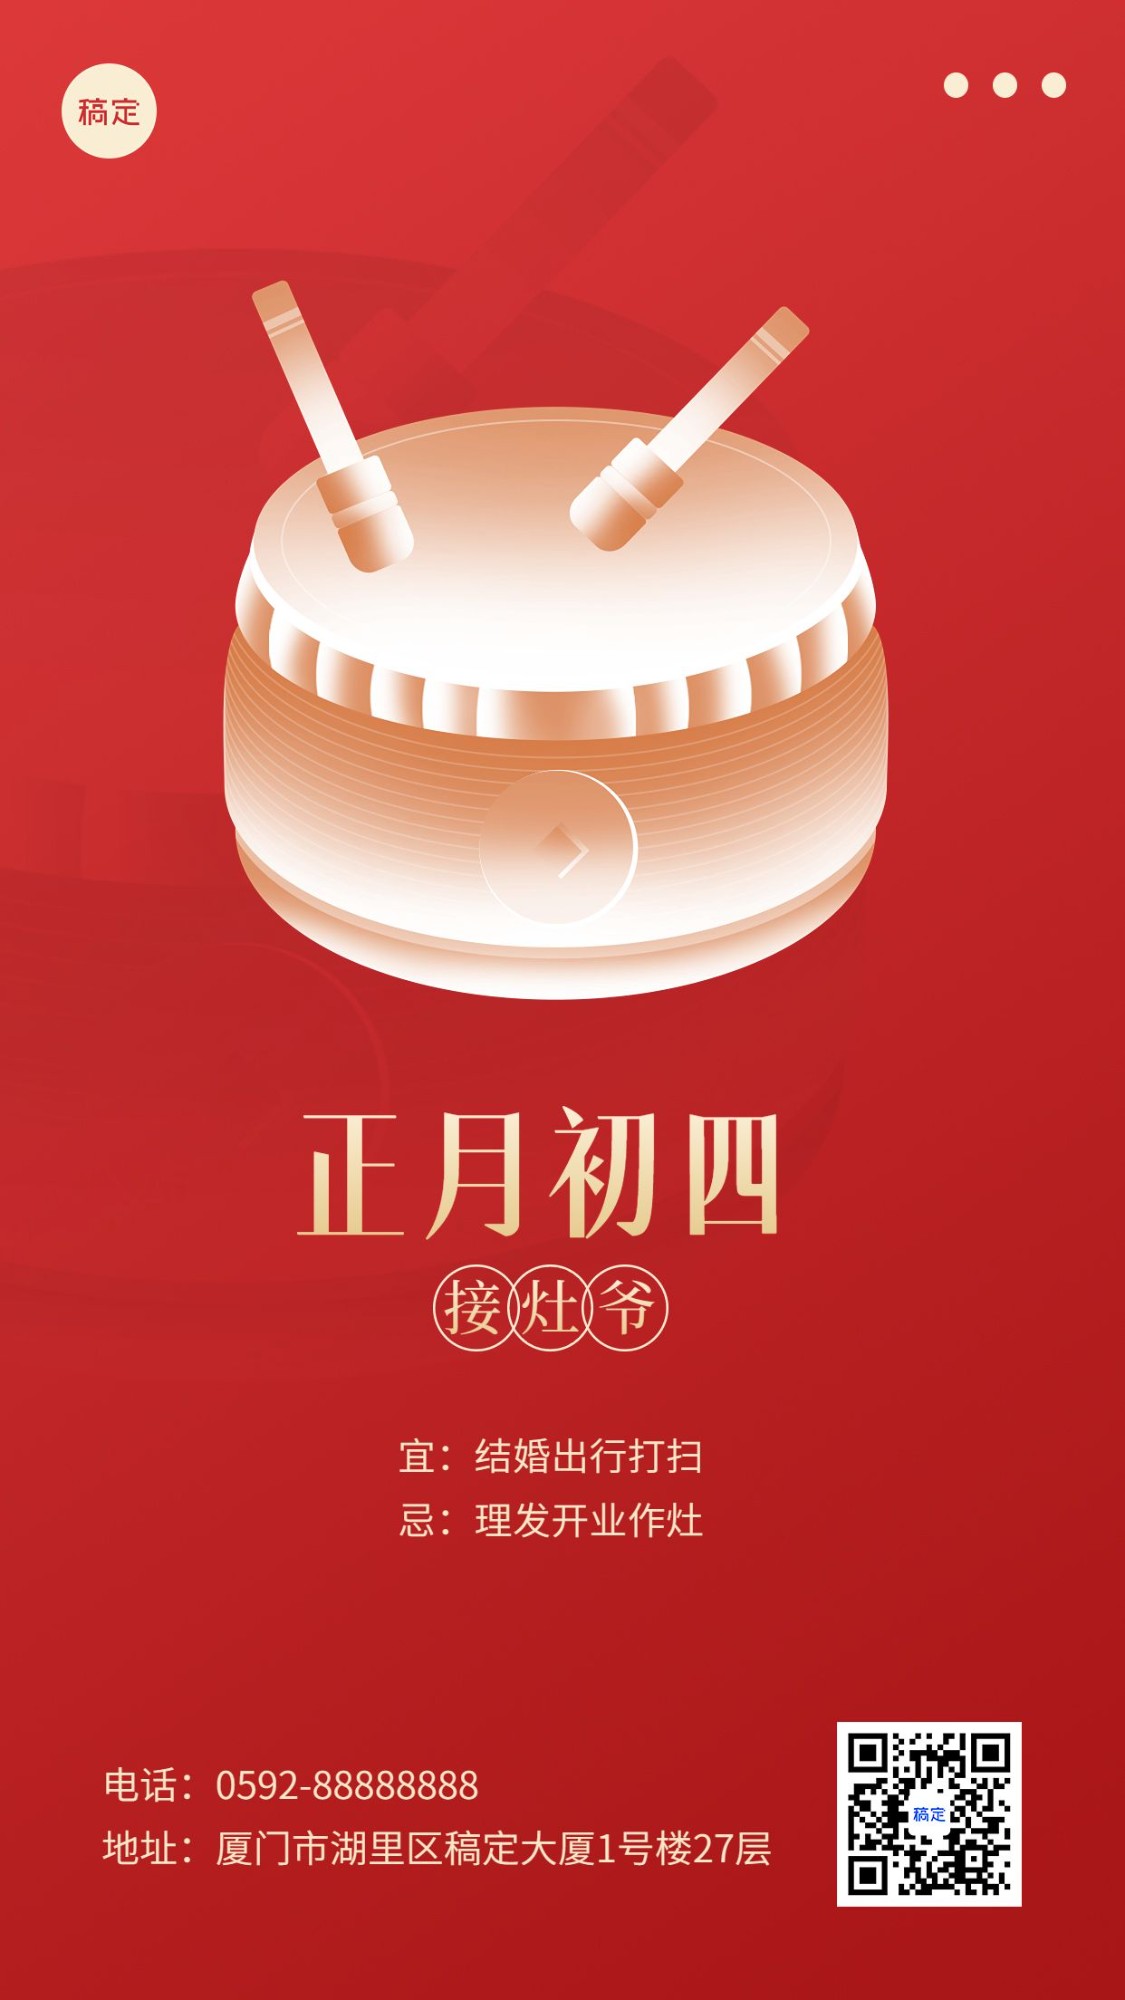 春节新年祝福正月初四简约排版套系手机海报